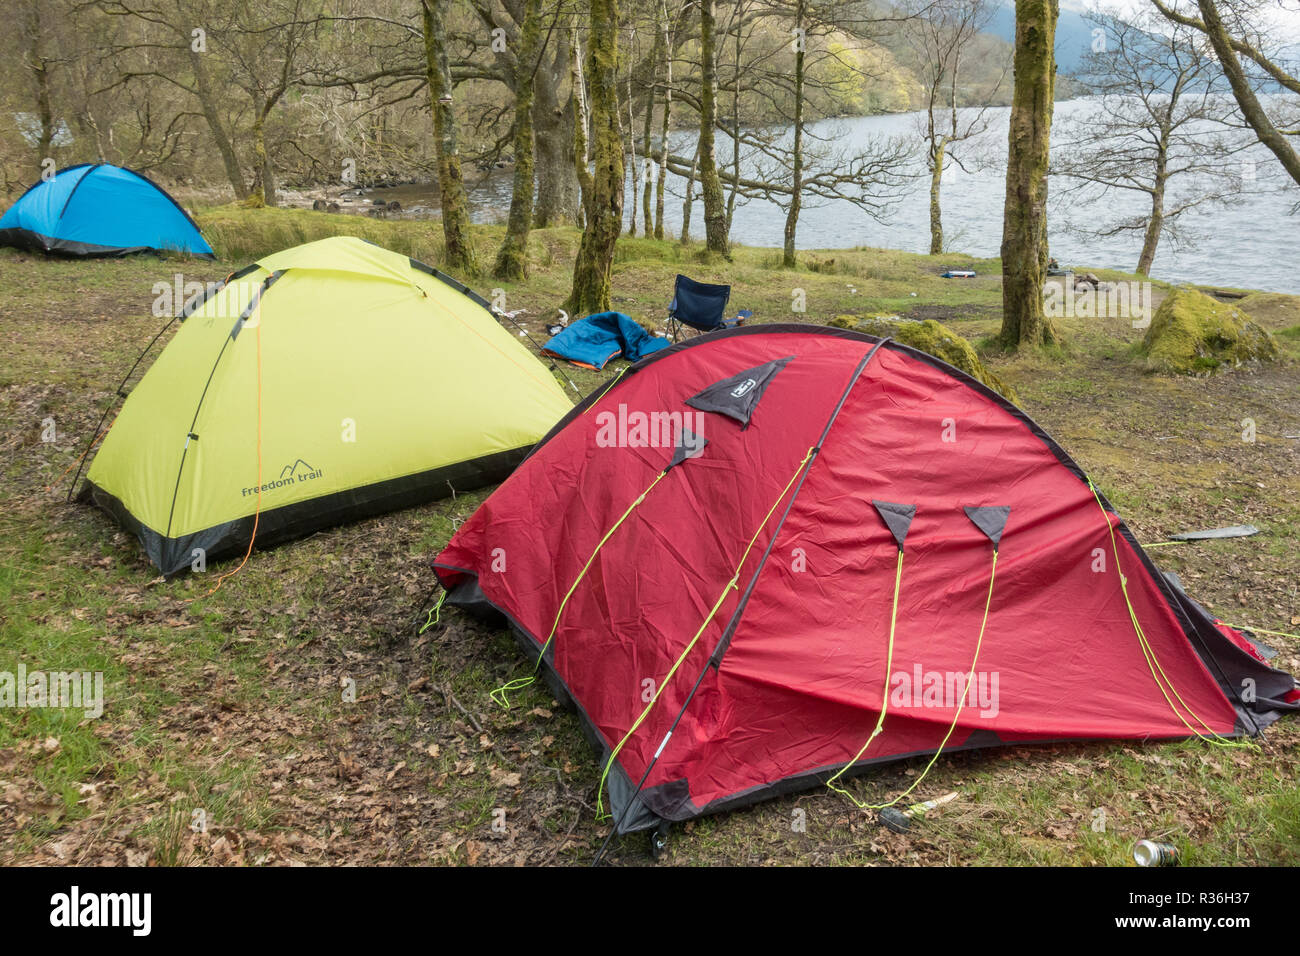 Le Loch Lomond - litière tentes abandonnées et l'équipement de camping sur la côte est au nord de Rowardennan juste en dehors de la zone de gestion de camping, Ecosse Banque D'Images